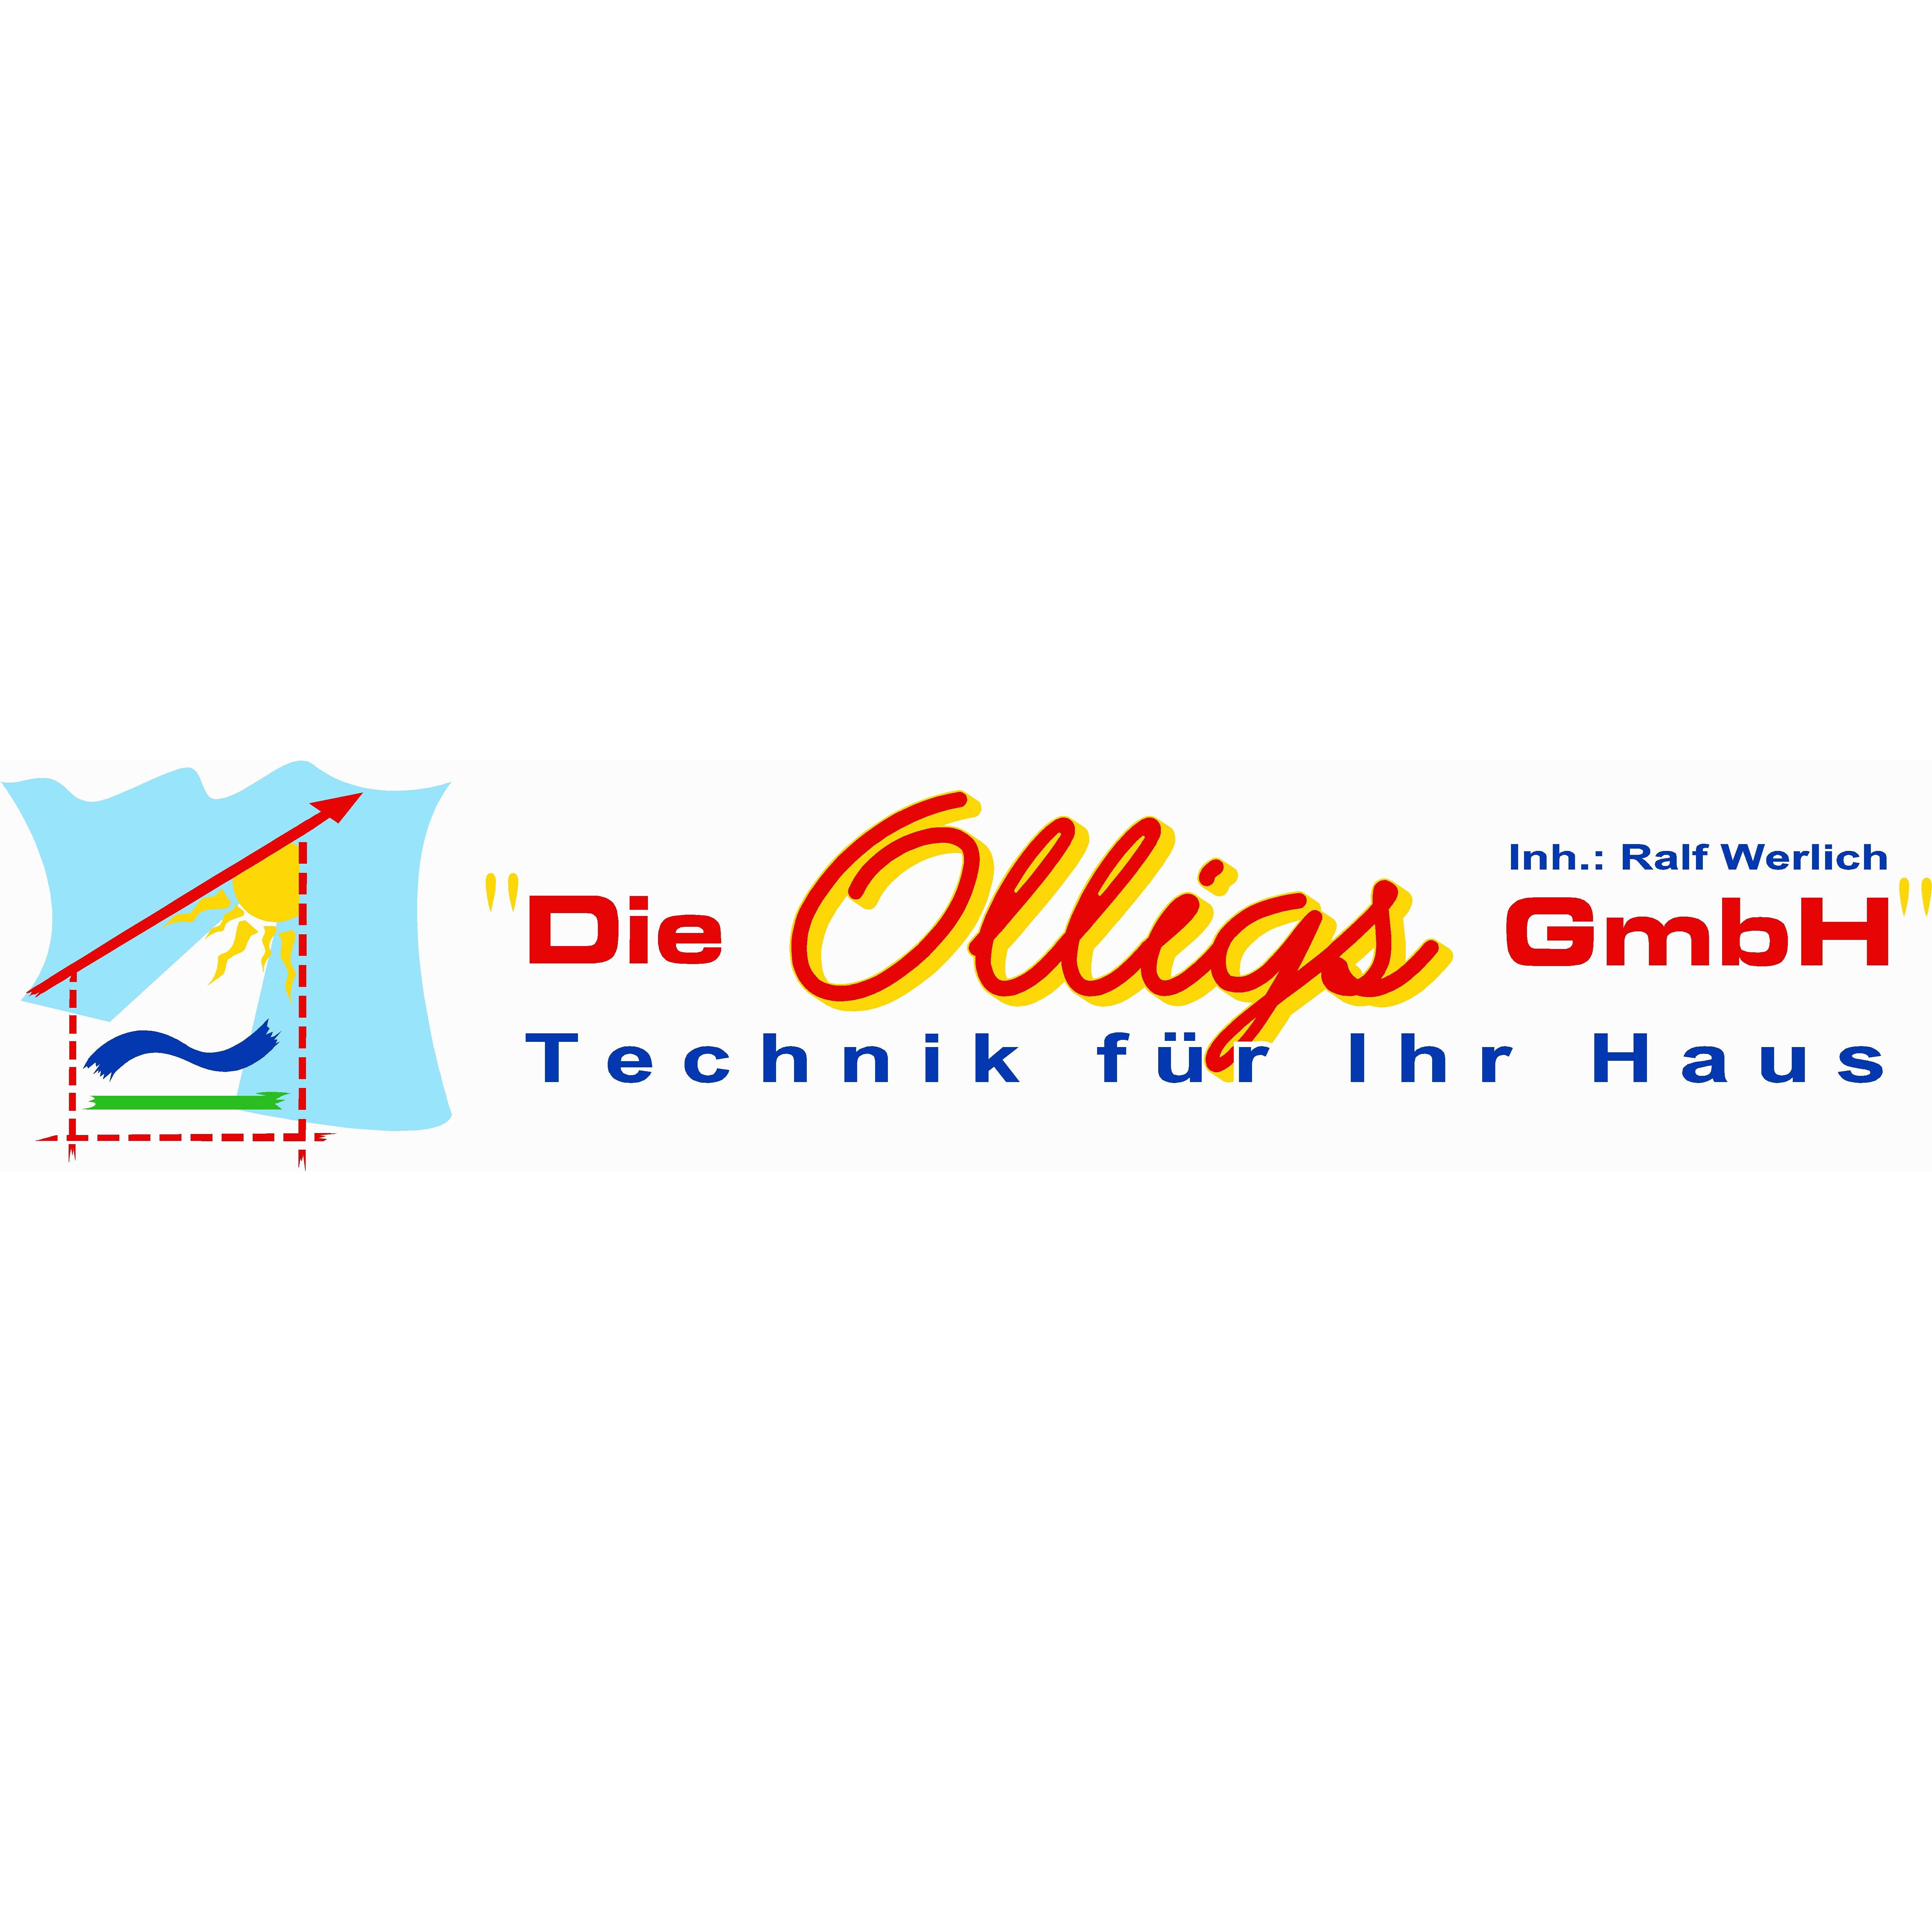 Die Olligs GmbH  